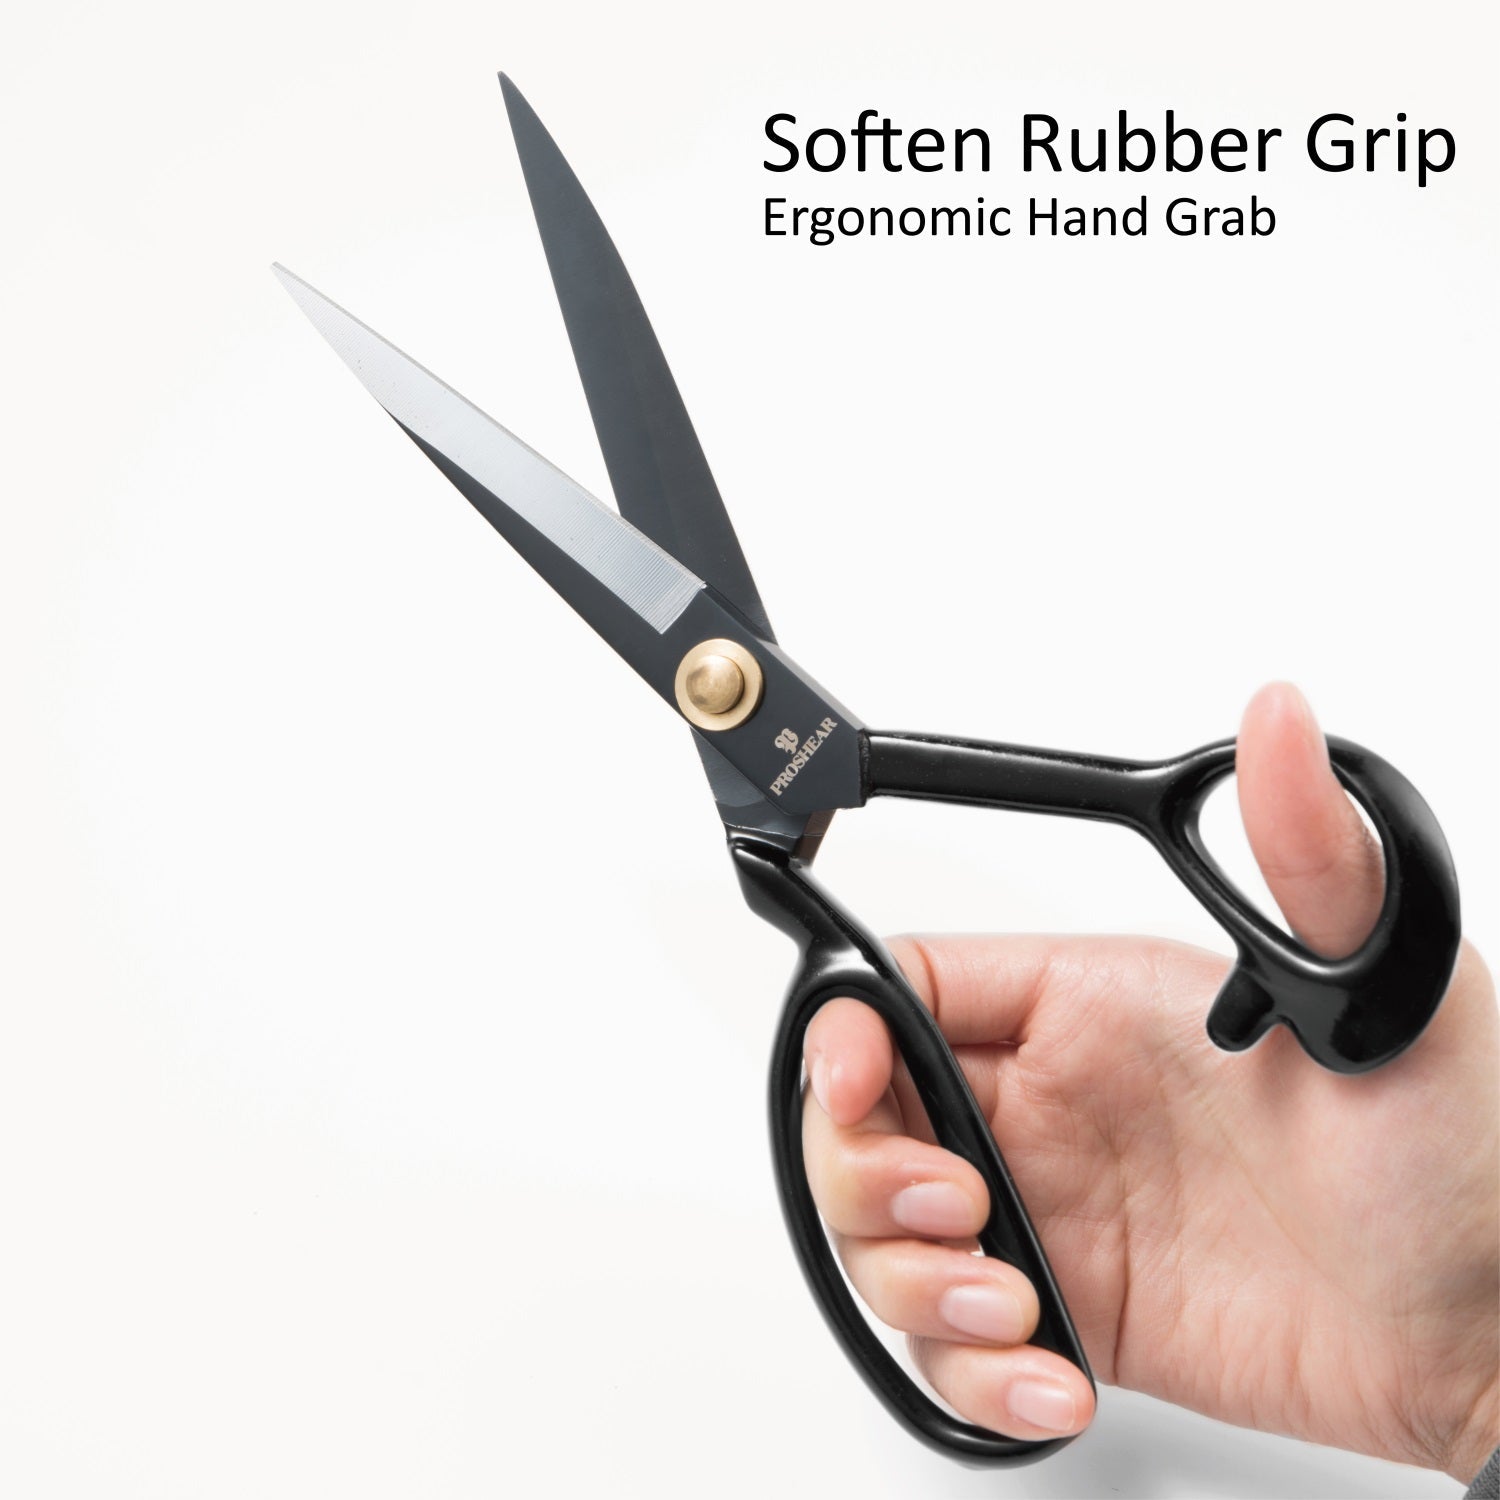 Mr. Pen Fabric Scissors Heavy Duty Sewing Scissors Premium Tailor Scissors 9.5 Inches